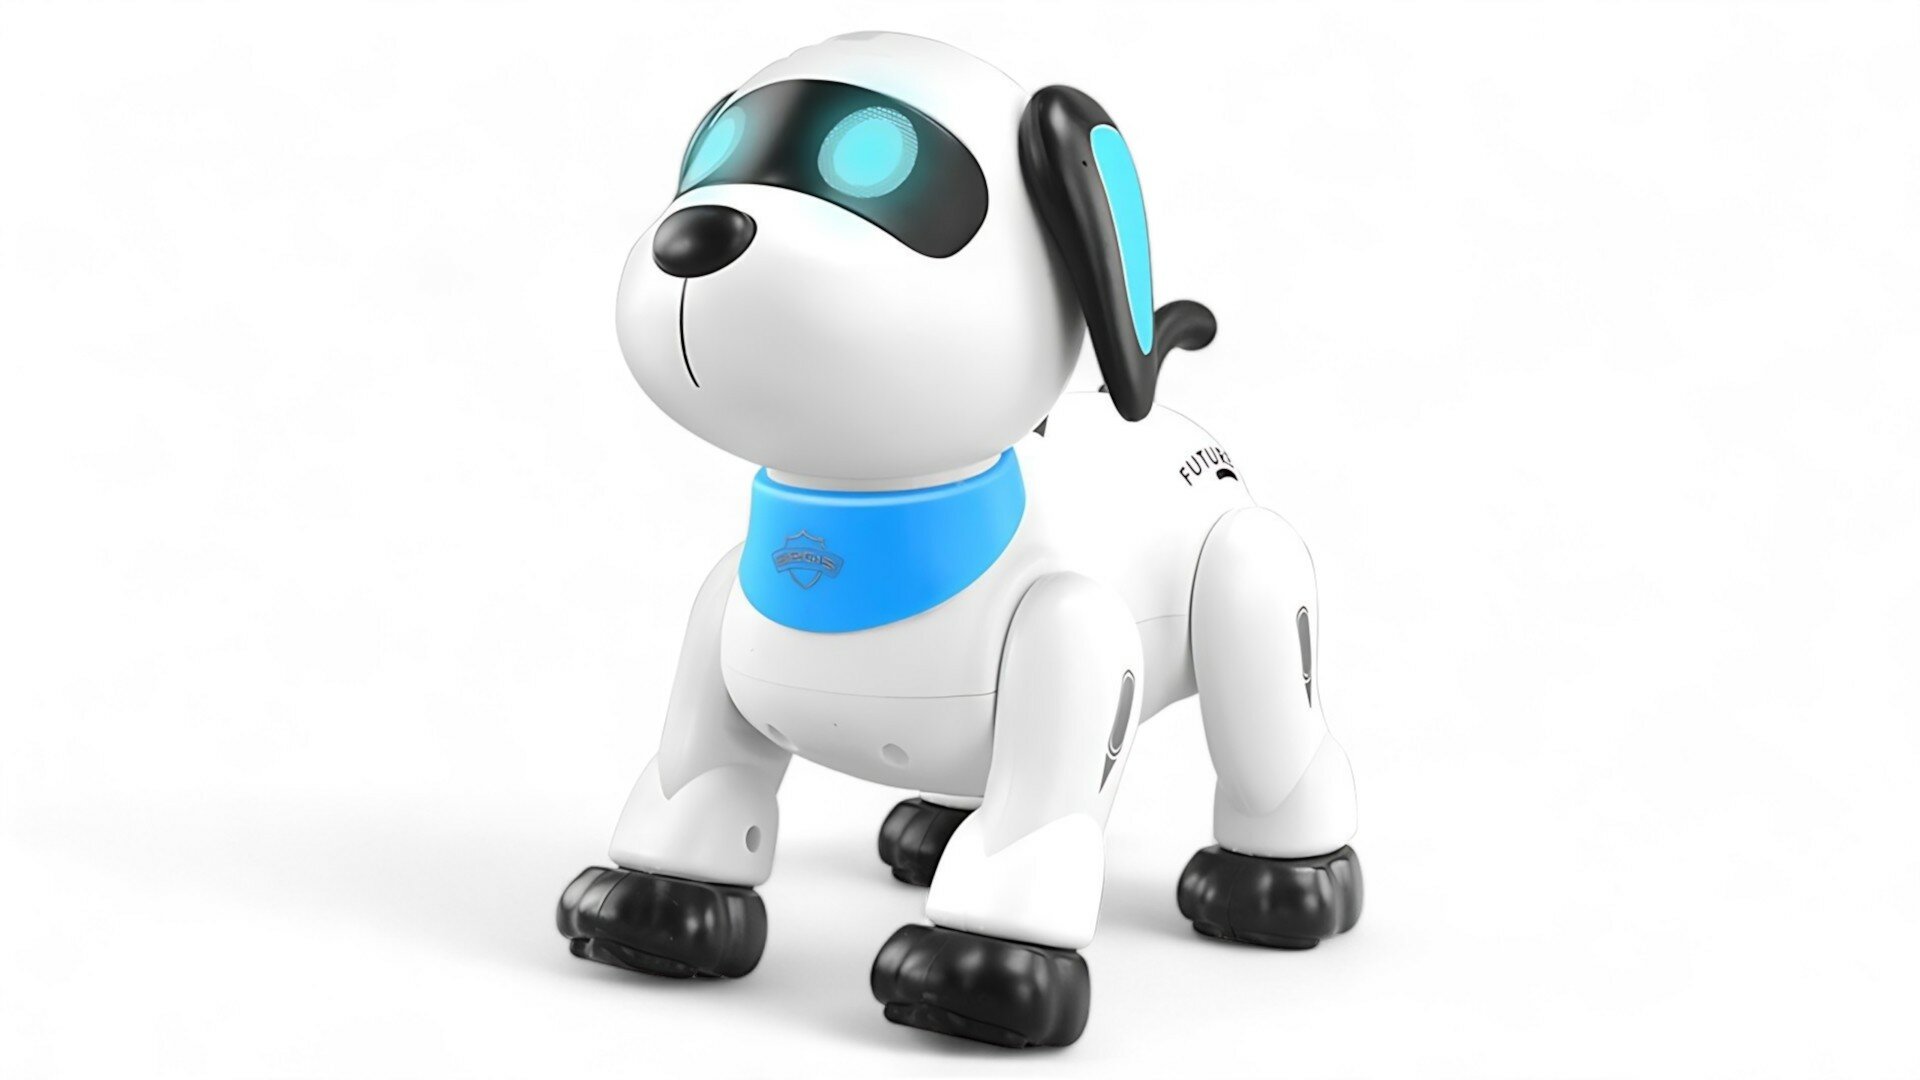 Интерактивная радиоуправляемая собака робот Stunt Dog - LNT-K21